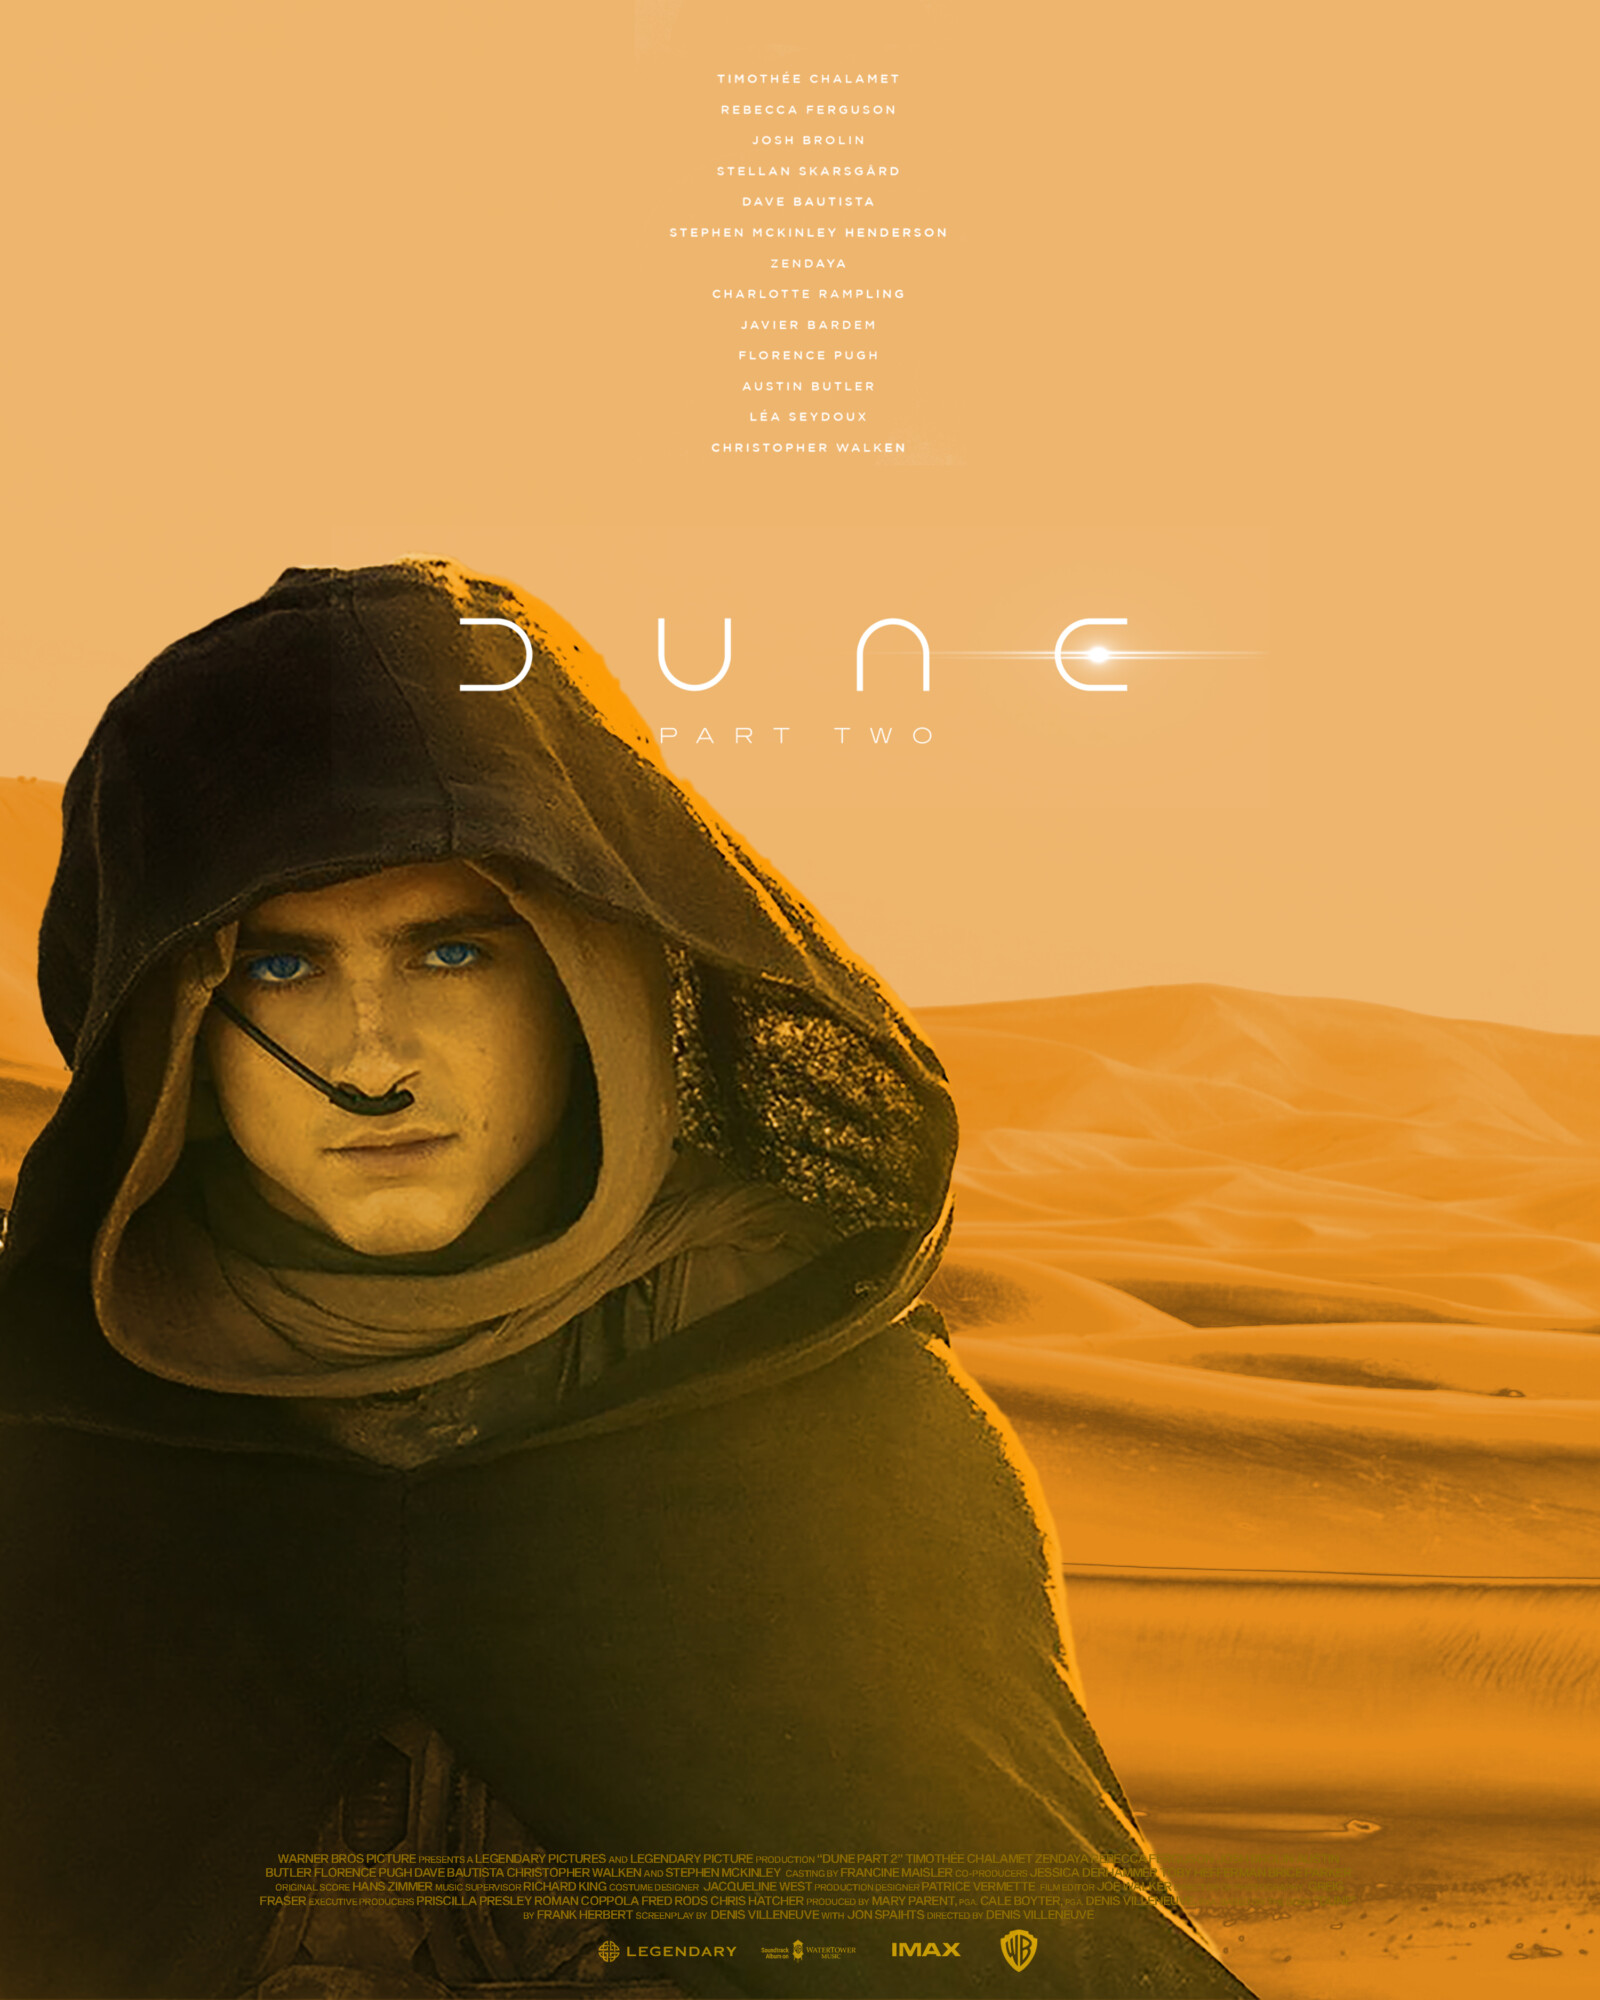 Dune Part 2/  Denis Villeneuve